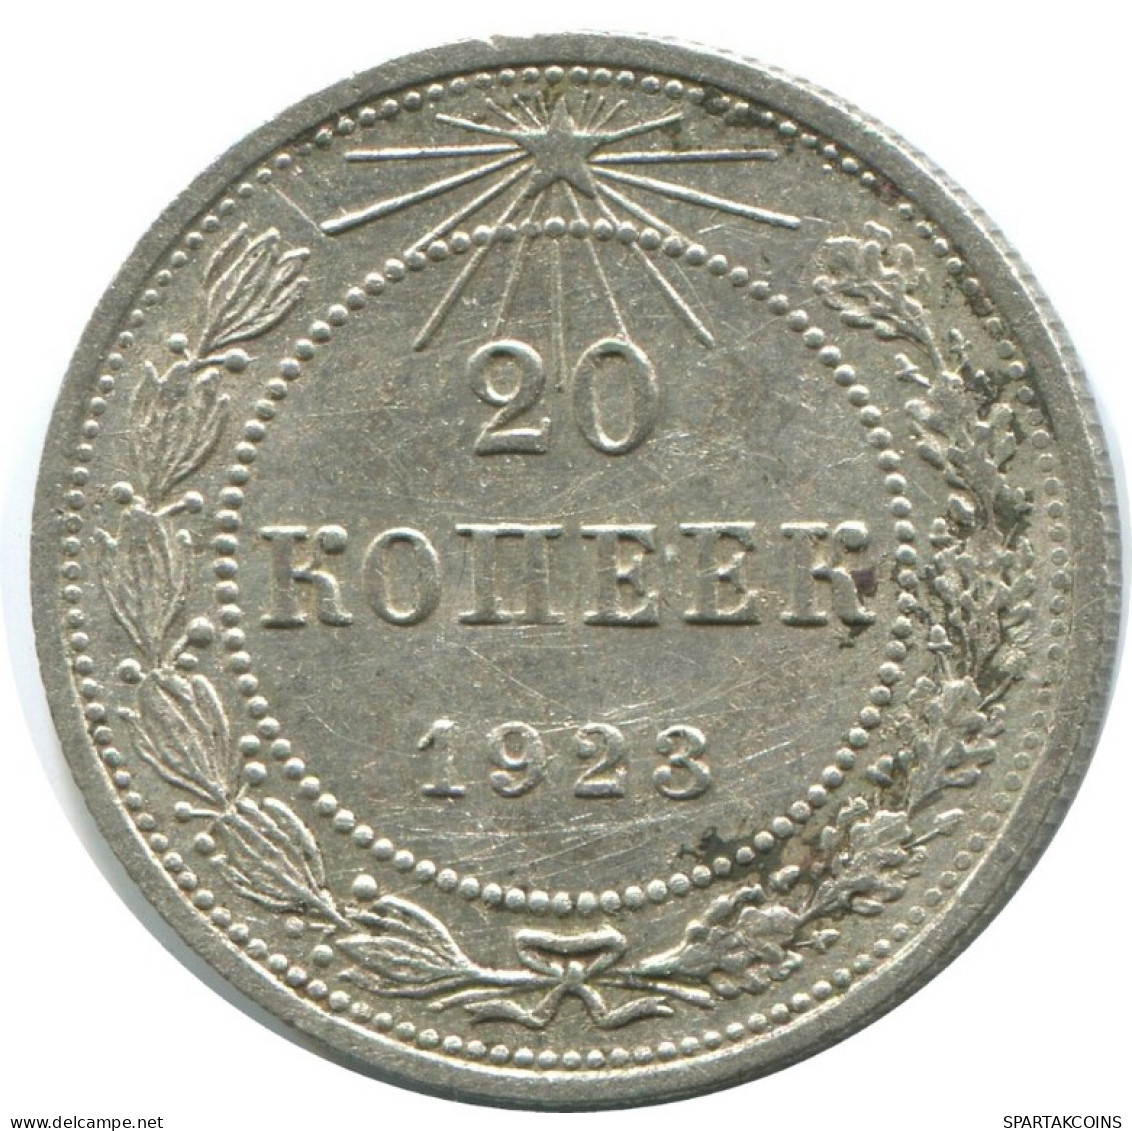 20 KOPEKS 1923 RUSSIA RSFSR SILVER Coin HIGH GRADE #AF608.U.A - Russland